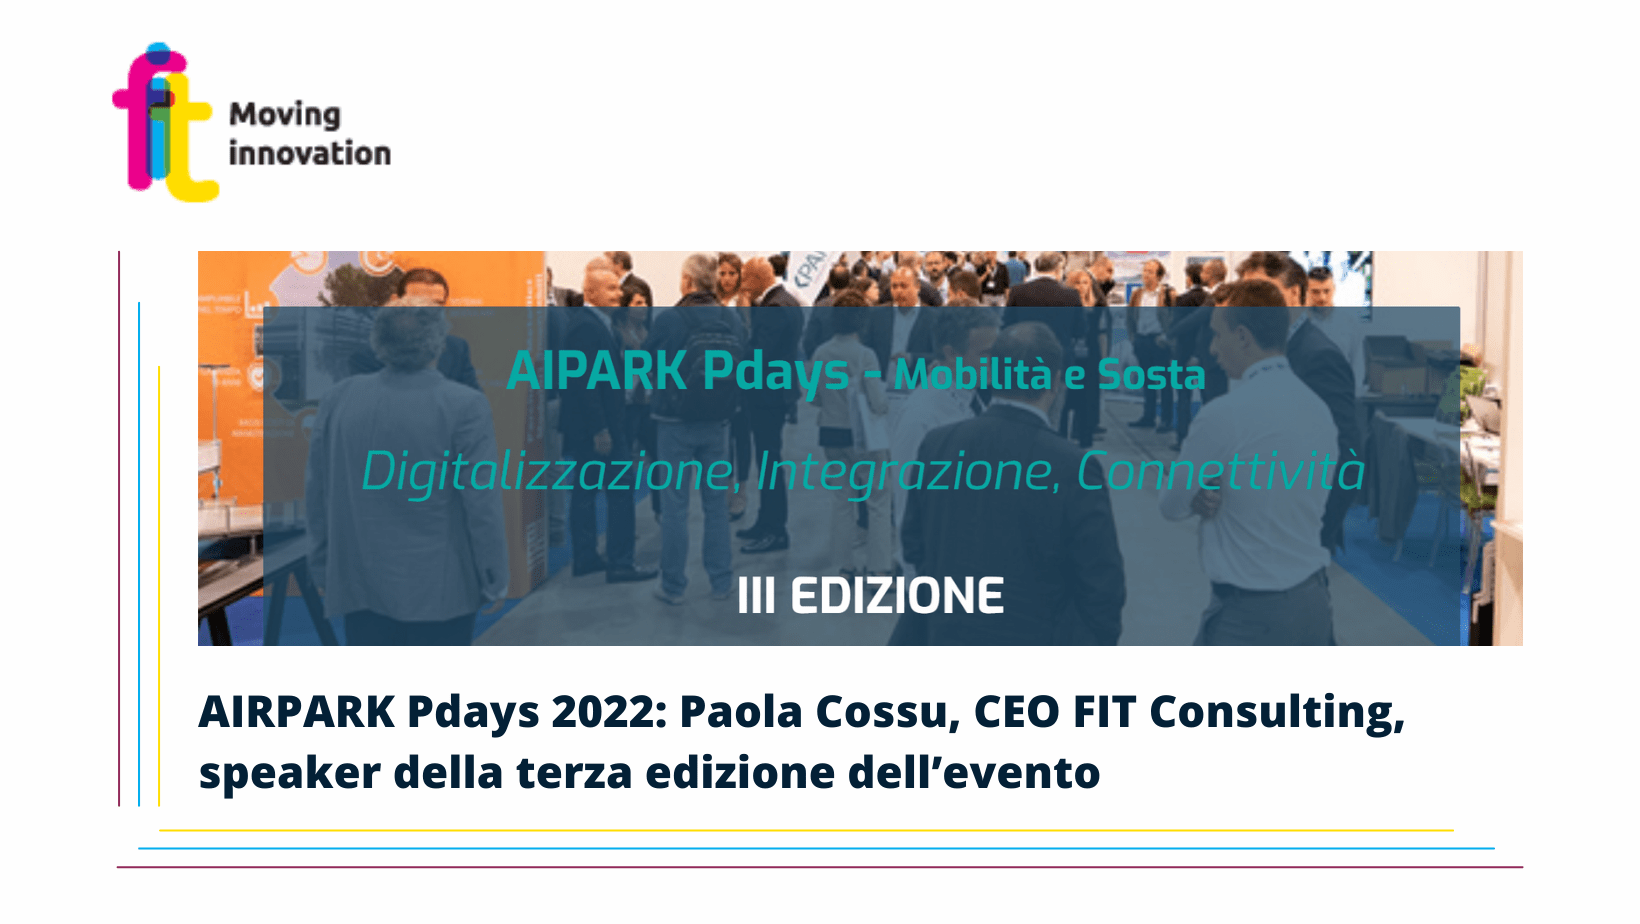 AIRPARK Pdays 2022 – Mobilità e sosta, Paola Cossu, CEO FIT Consulting, speaker della terza edizione dell’evento dedicato a digitalizzazione, Integrazione e Connettività